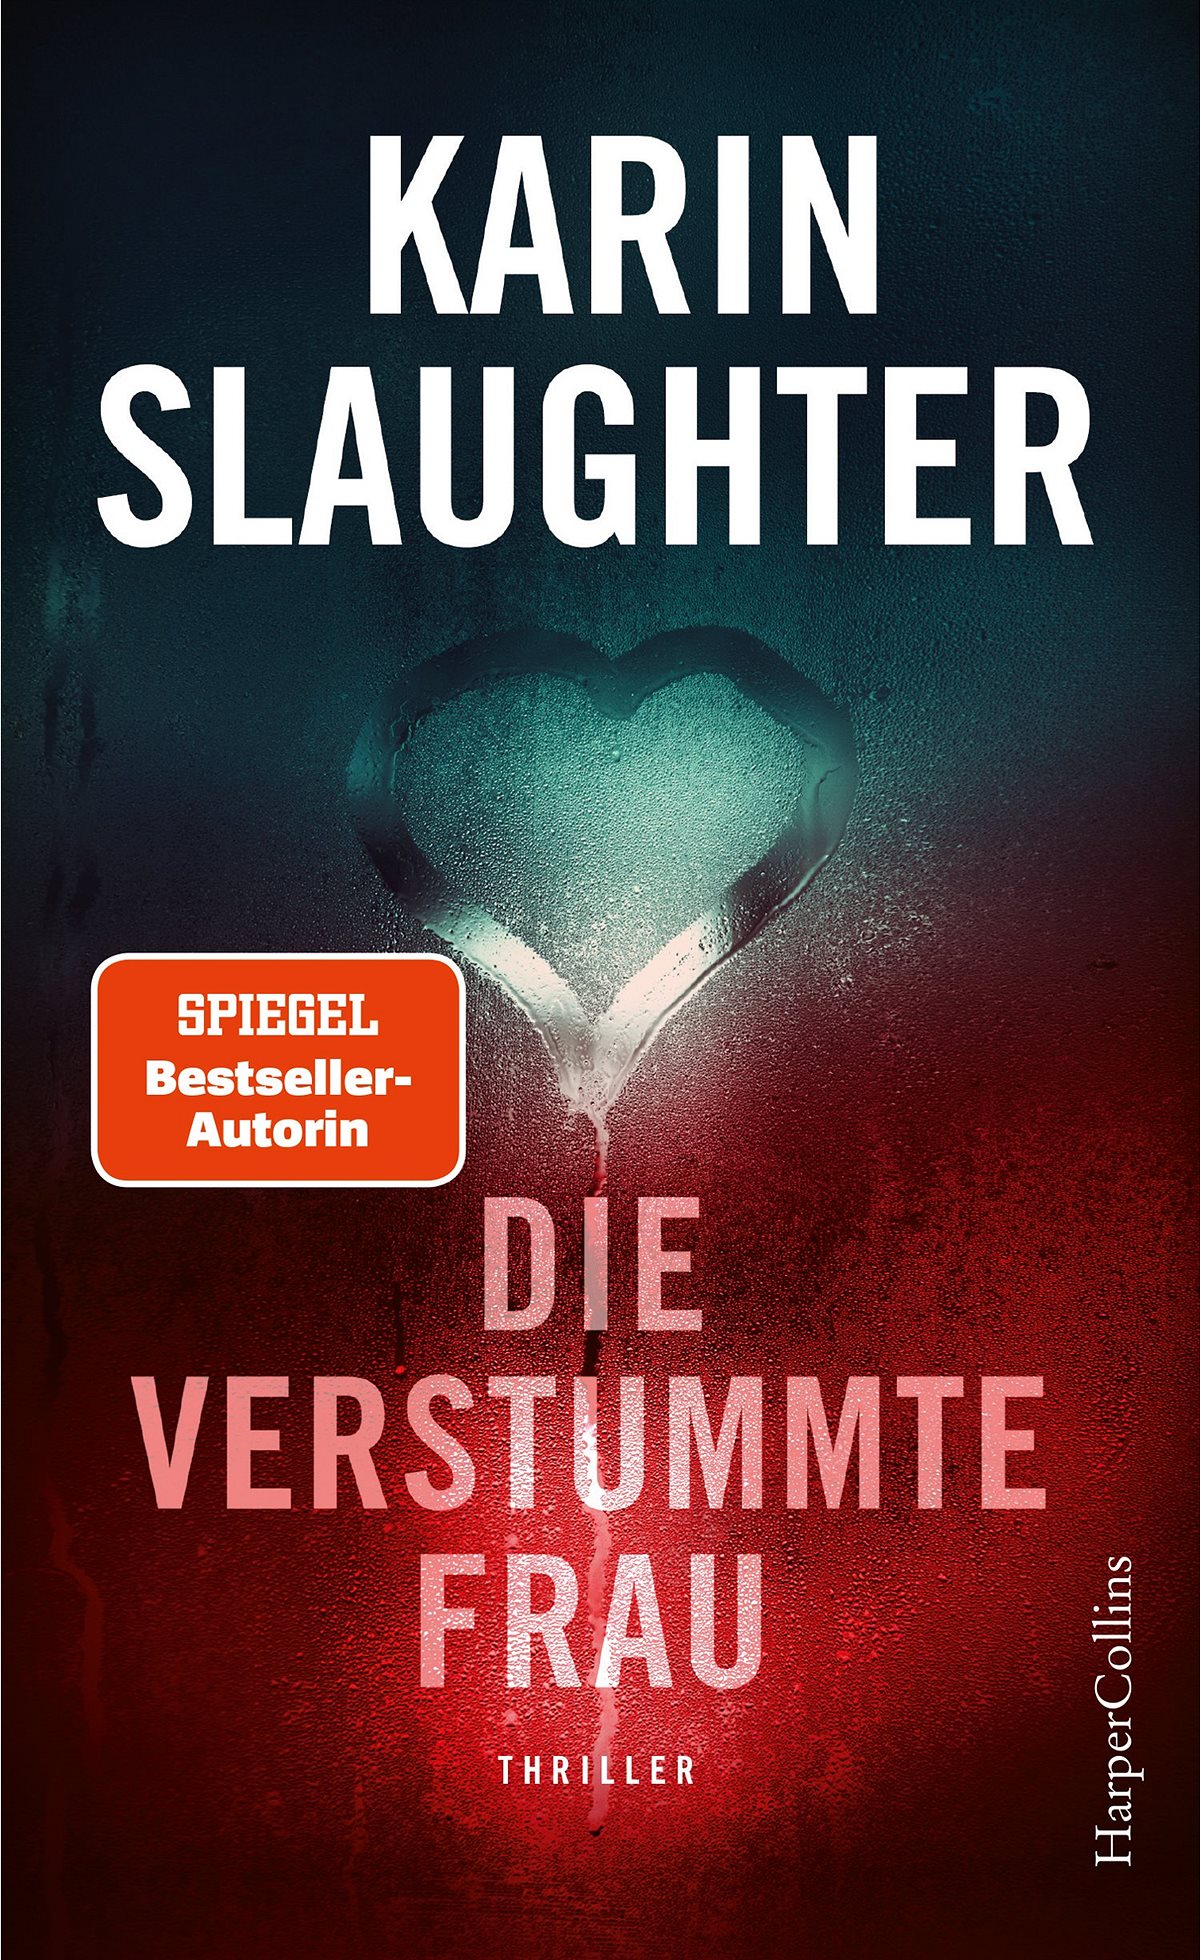 Die verstummte Frau von Karin Slaughter (672 Seiten) EUR 24,90